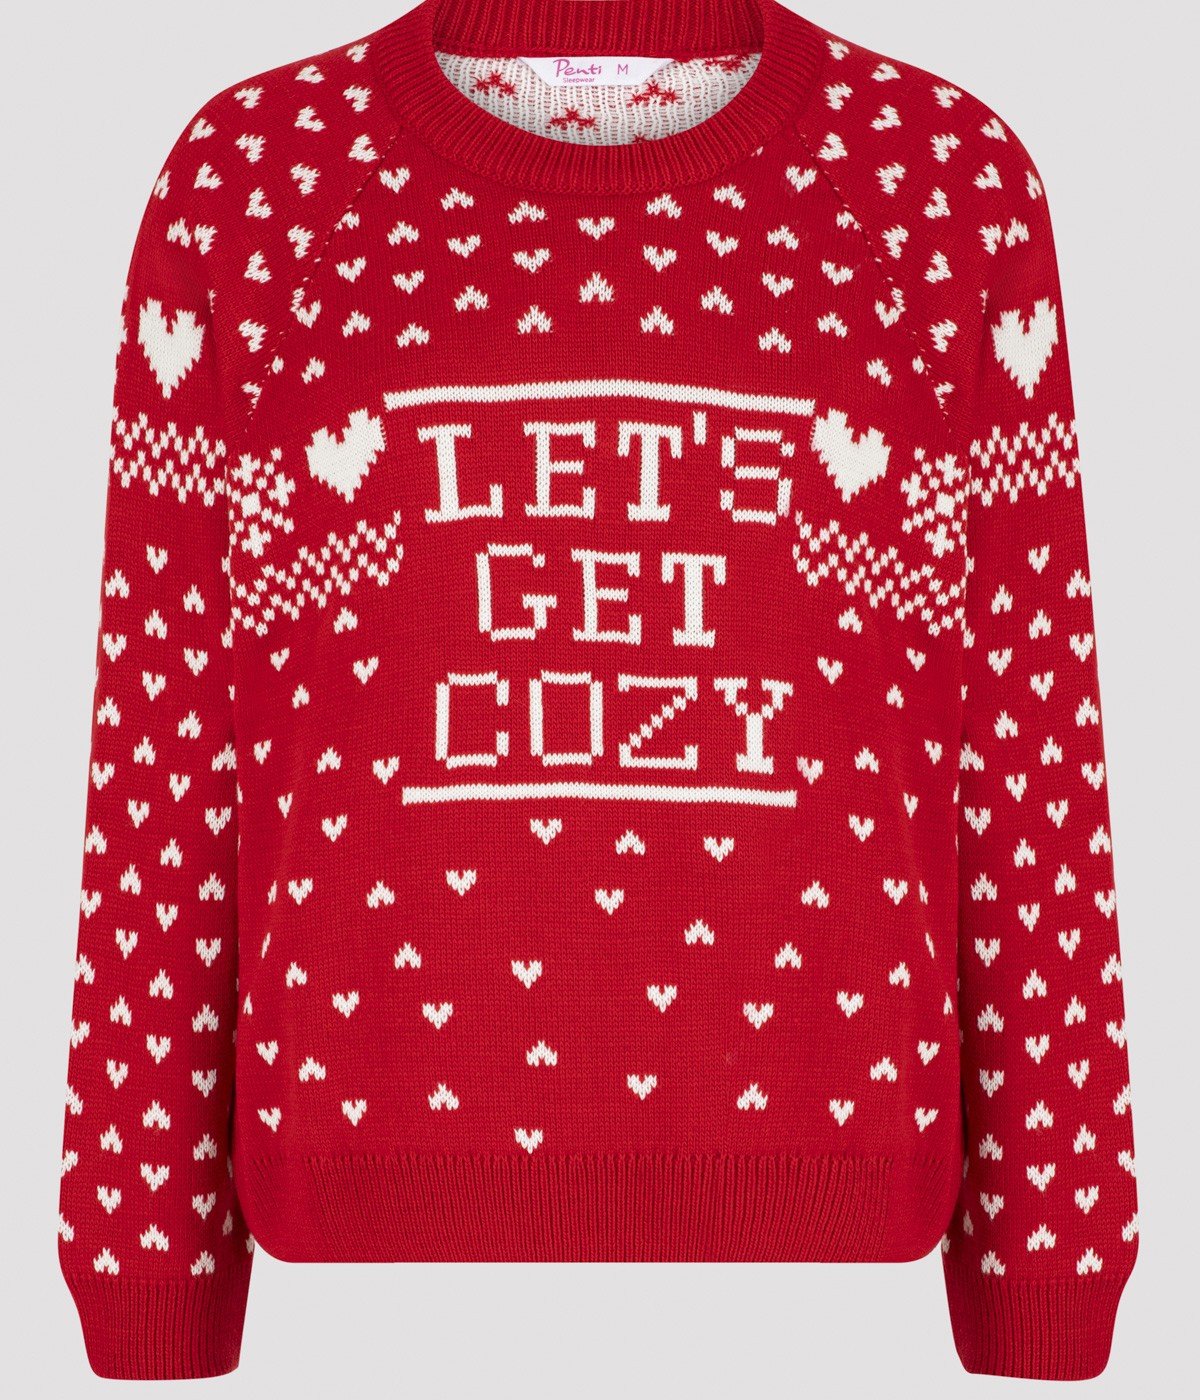 Let's Get Cozy Sweatshirt